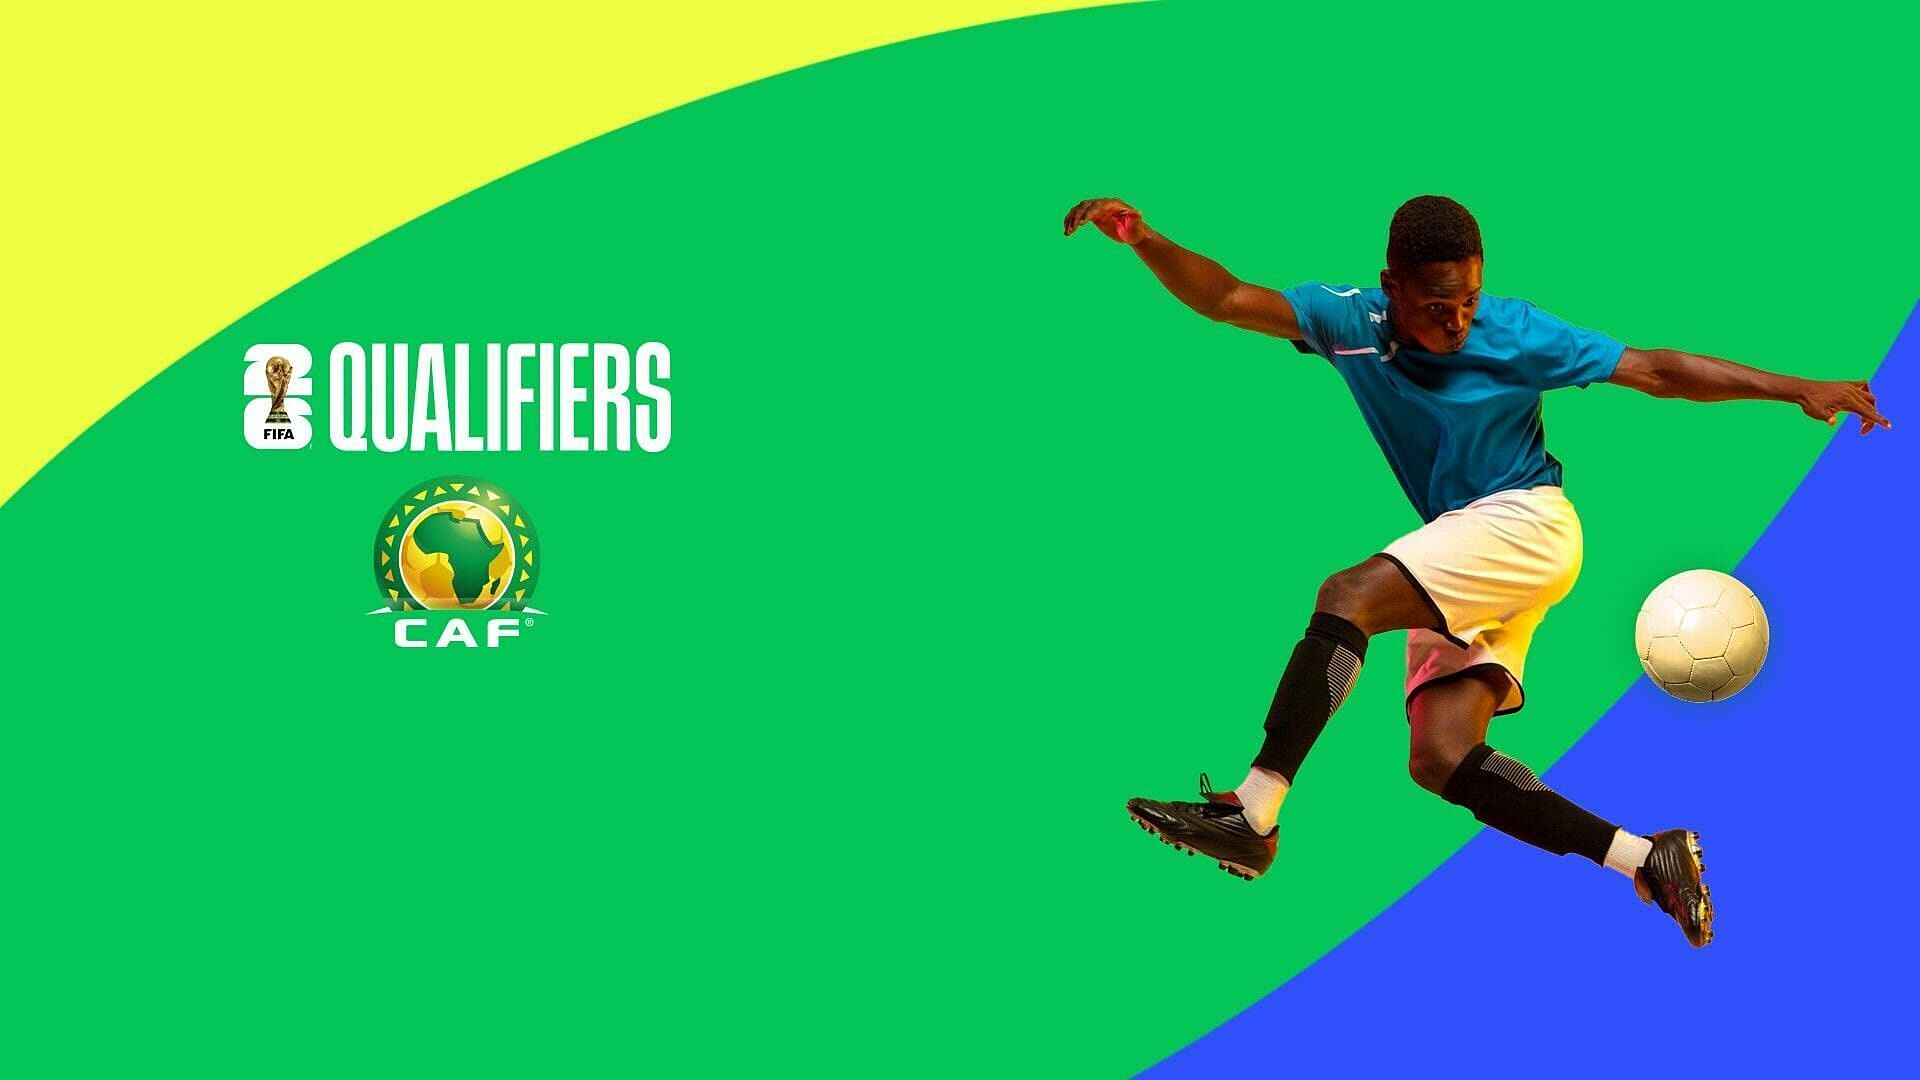 Nogomet - Kvalifikacije za SP (Afrika): Seychelles - Burundi